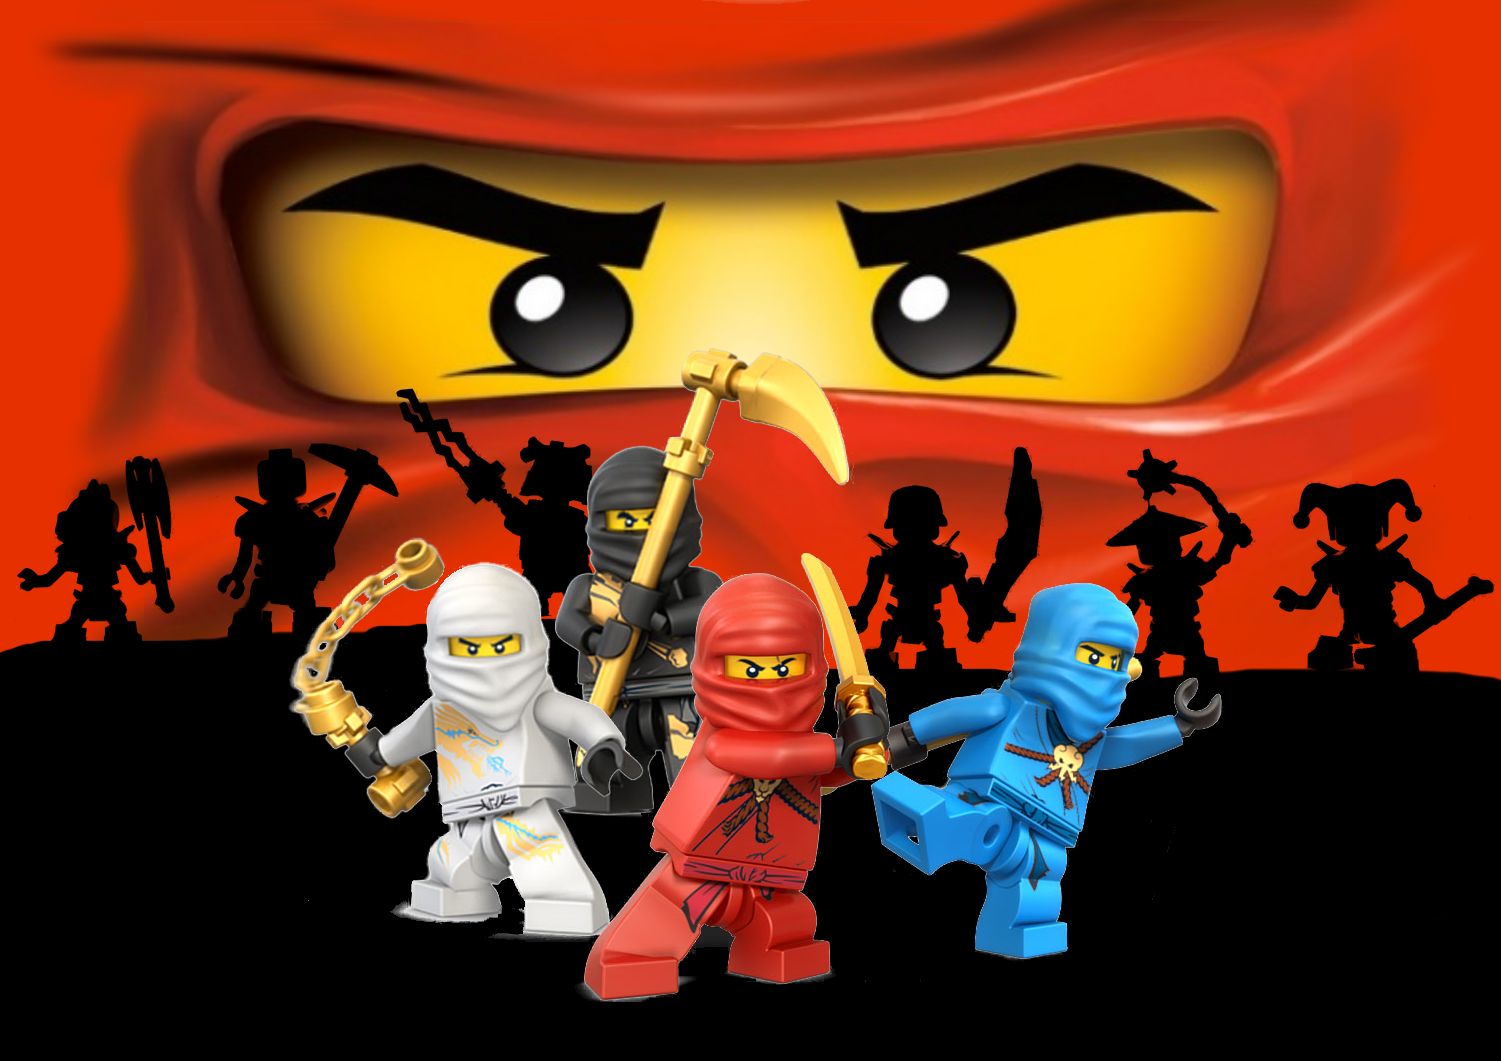 lego, lego ninjago: masters of spinjitzu, jay walker, tv show, cole (ninjago), kai (ninjago), zane (ninjago)